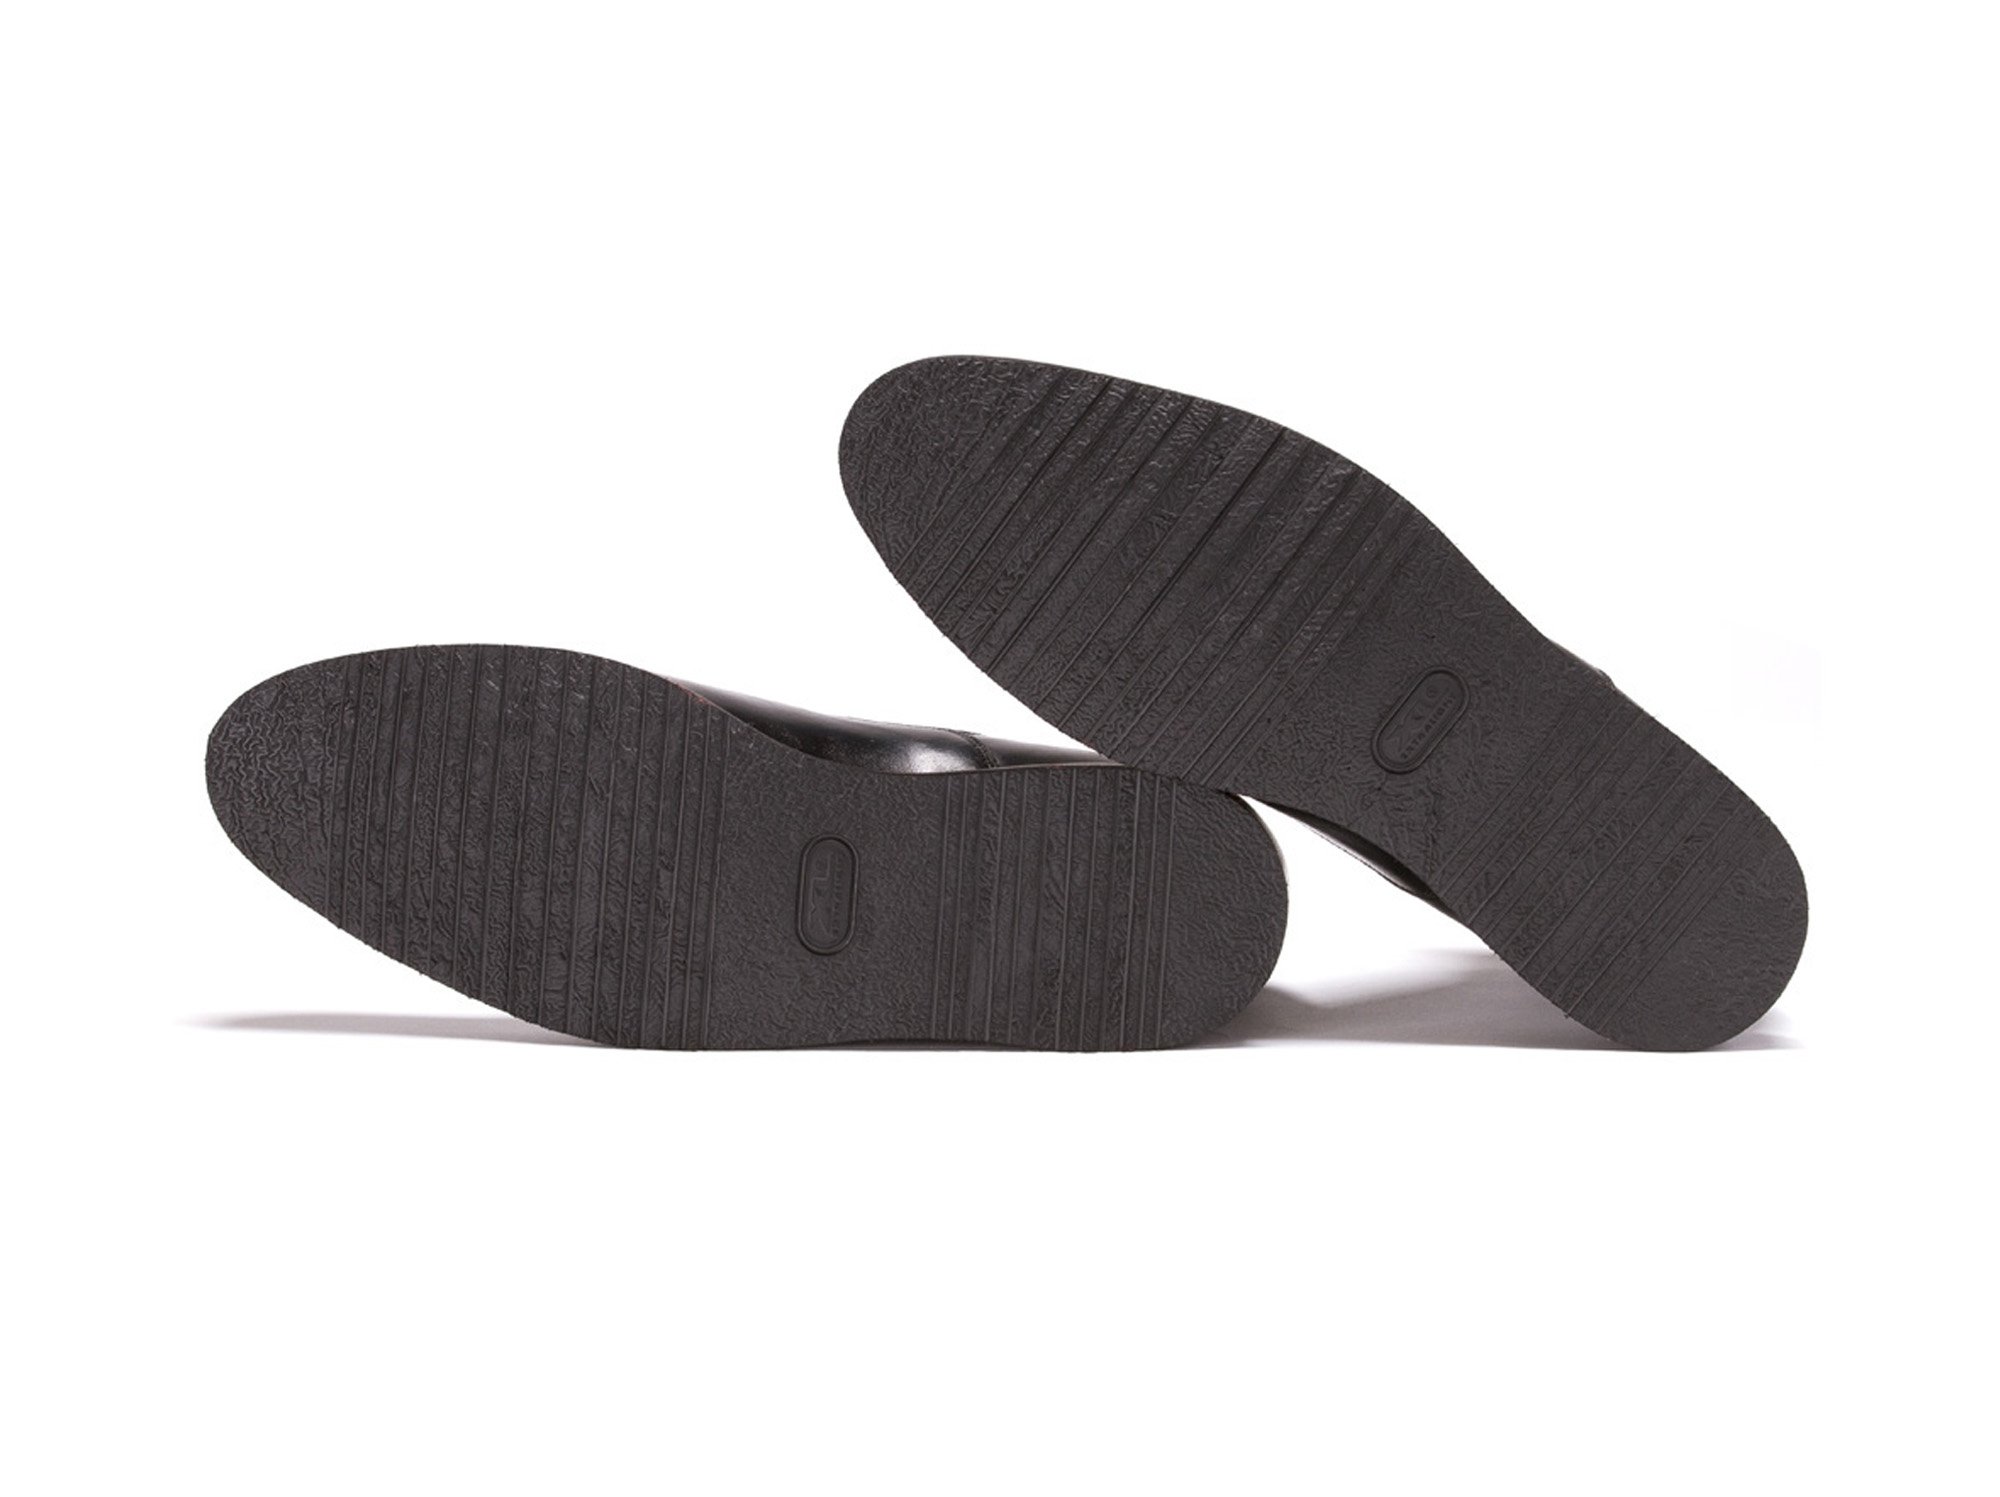 J.FitzPatrick Footwear X-Lite Rubber Sole